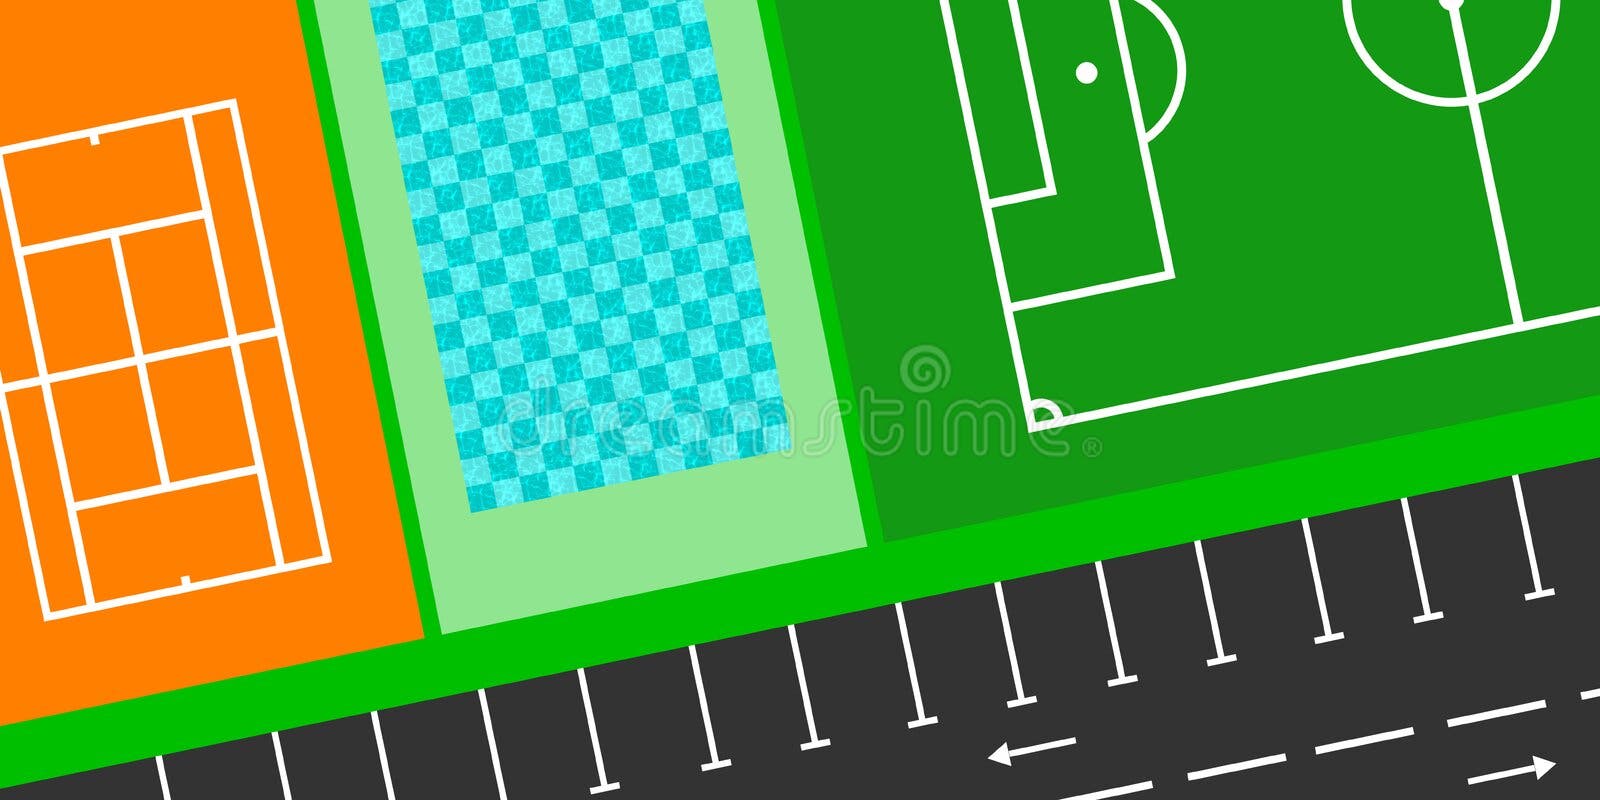 Jogos De Vídeo Para Aplicações De Futebol Em Smartphone E Jogos De Apostas  Em Linha. Celular E Bola De Futebol Ilustração Stock - Ilustração de  projeto, equipe: 242010804